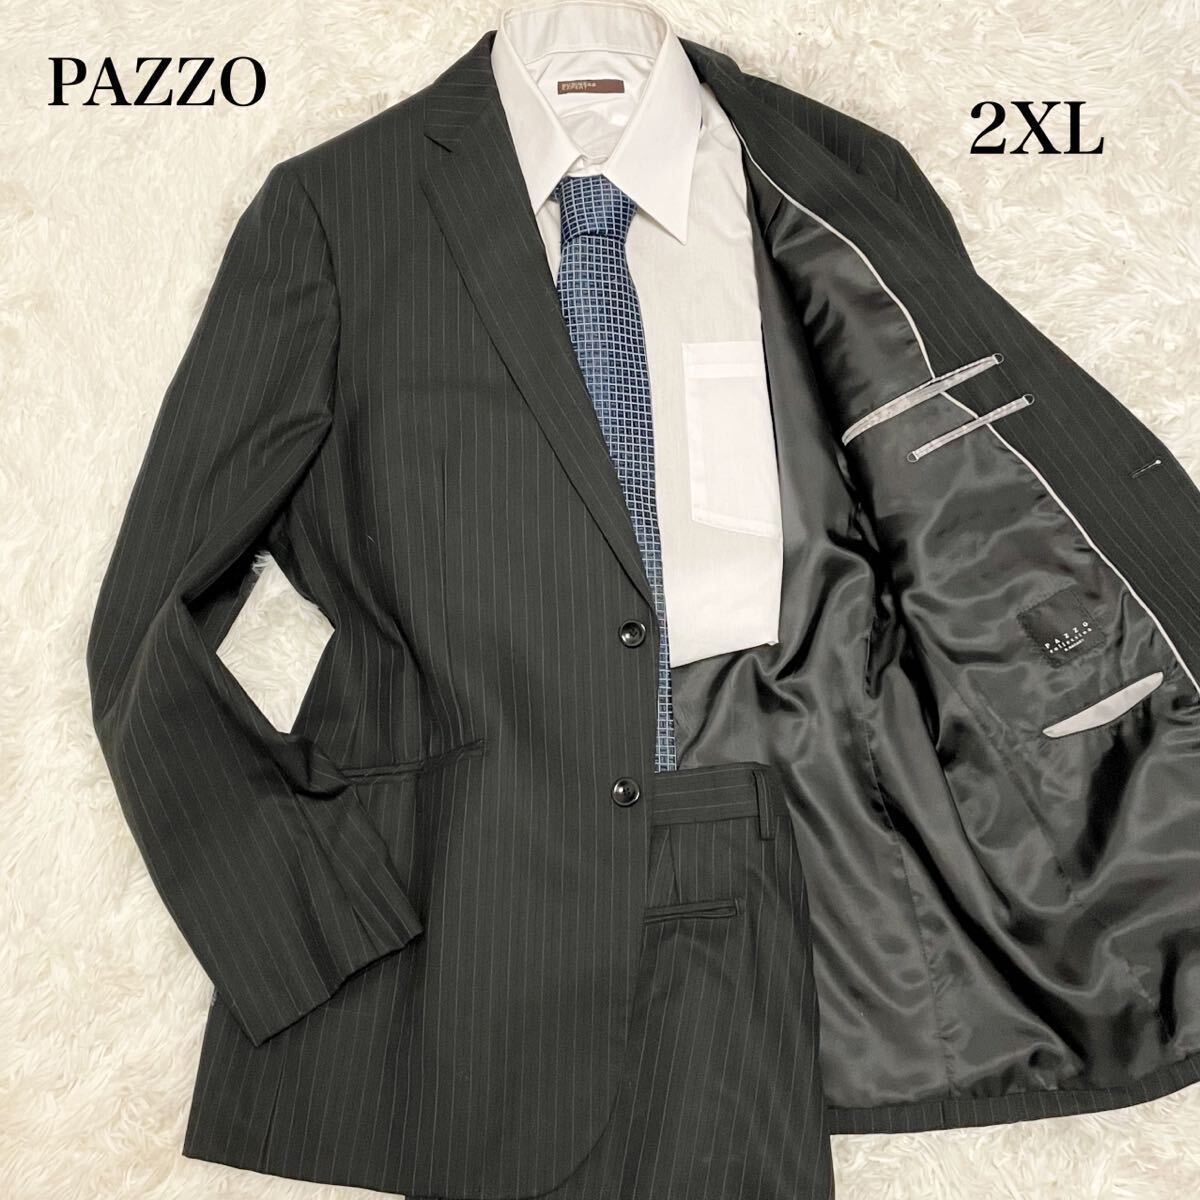 1スタ 激レア PAZZO COLLECTION パッゾ コレクション セットアップスーツ ブラック ストライプ 2XL XXL 大きいサイズ メンズ ビジネス 2B _画像1